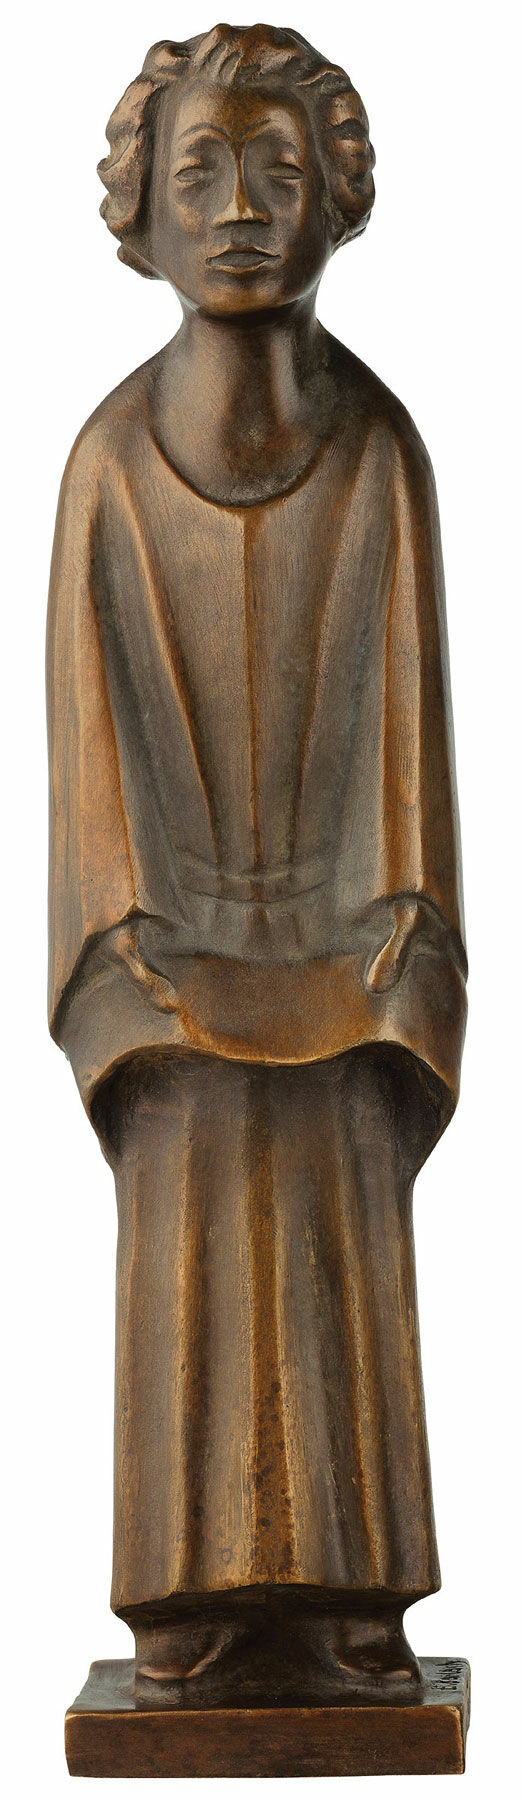 Skulptur "Sangerinden (syngende klosterelev)" (1931), reduktion i bronze von Ernst Barlach